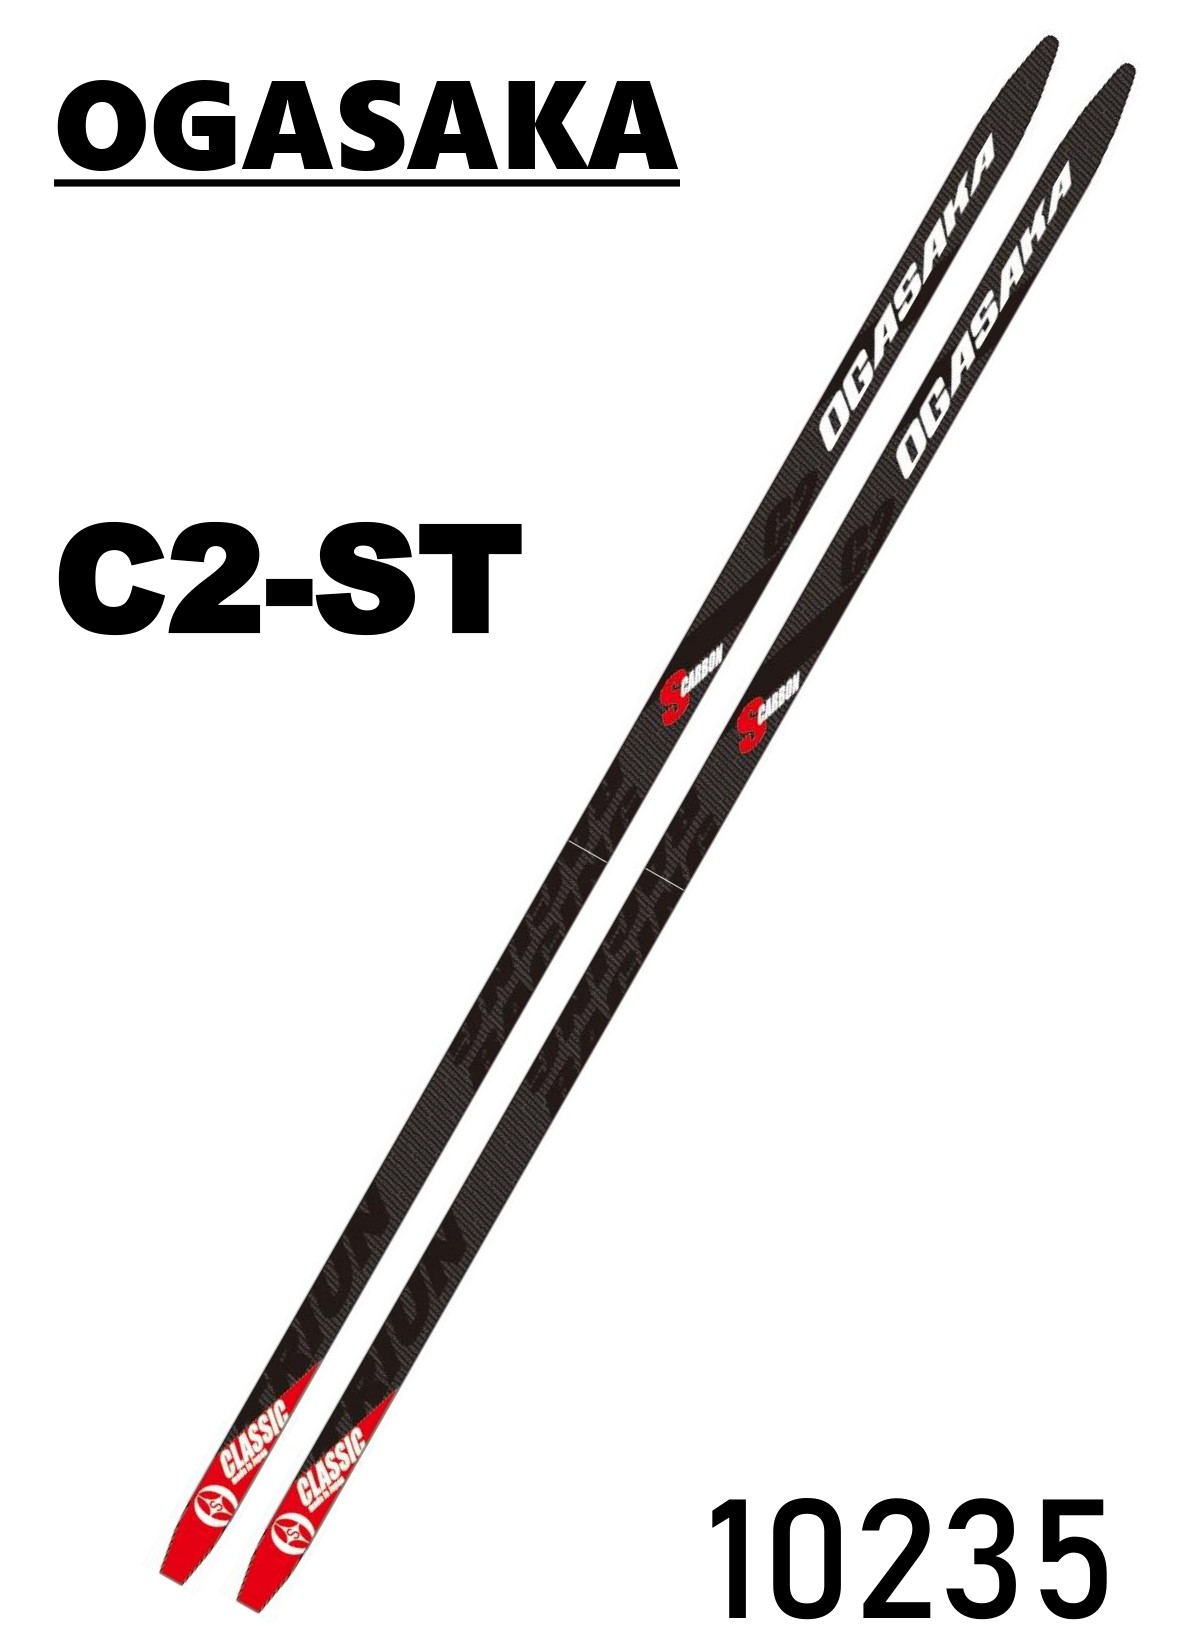 オガサカC3 クロスカントリースキー 170㌢ビンディングはNNNです - スキー